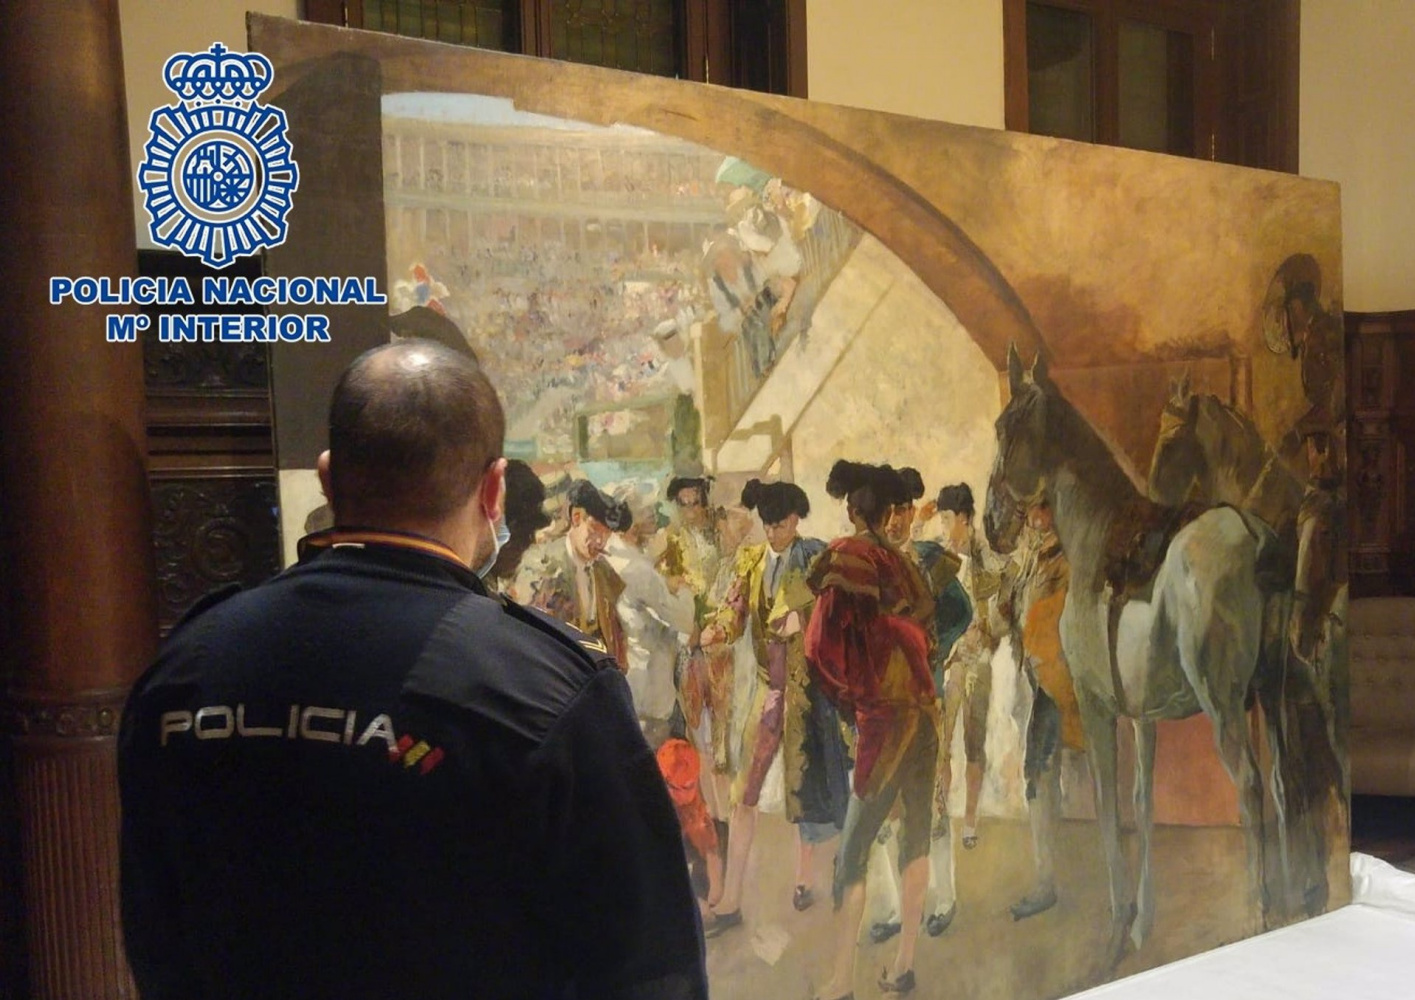 Испанская полиция обнаружила картину Хоакина Сорольи стоимостью 3 миллиона евро